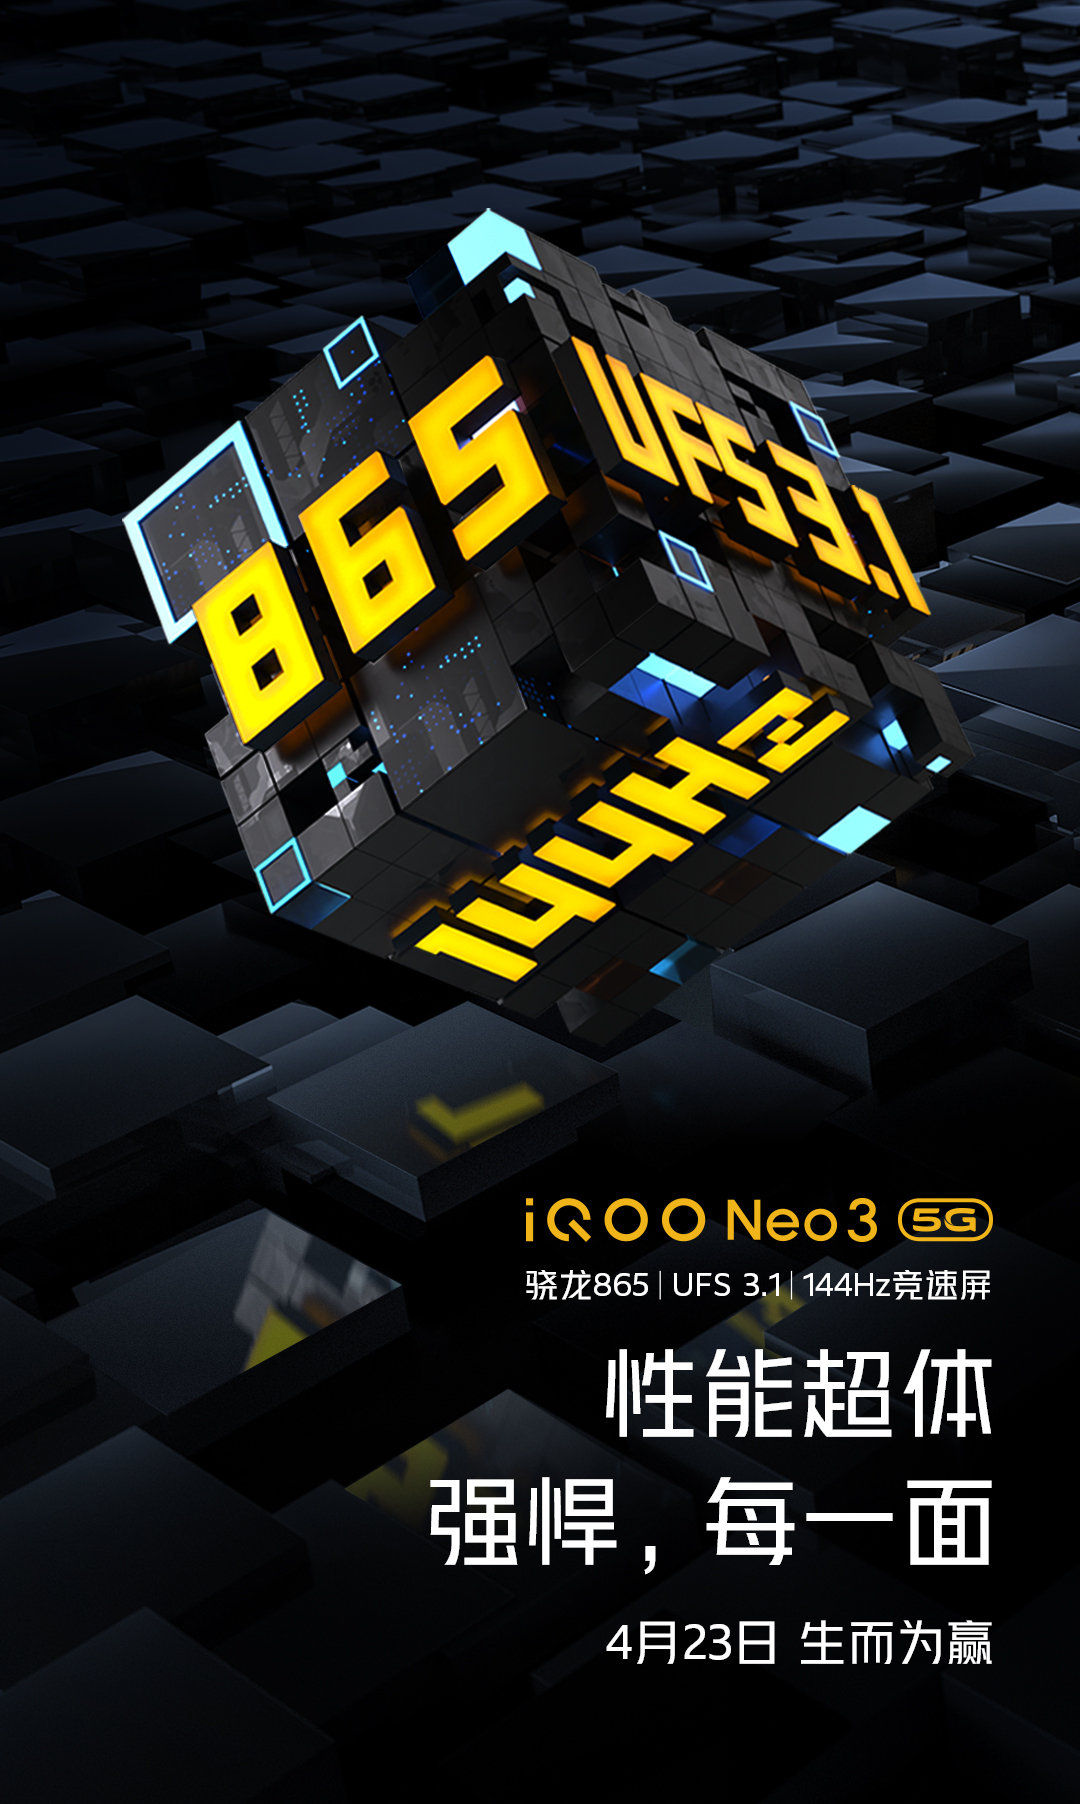 IQOO Neo 3 Poster